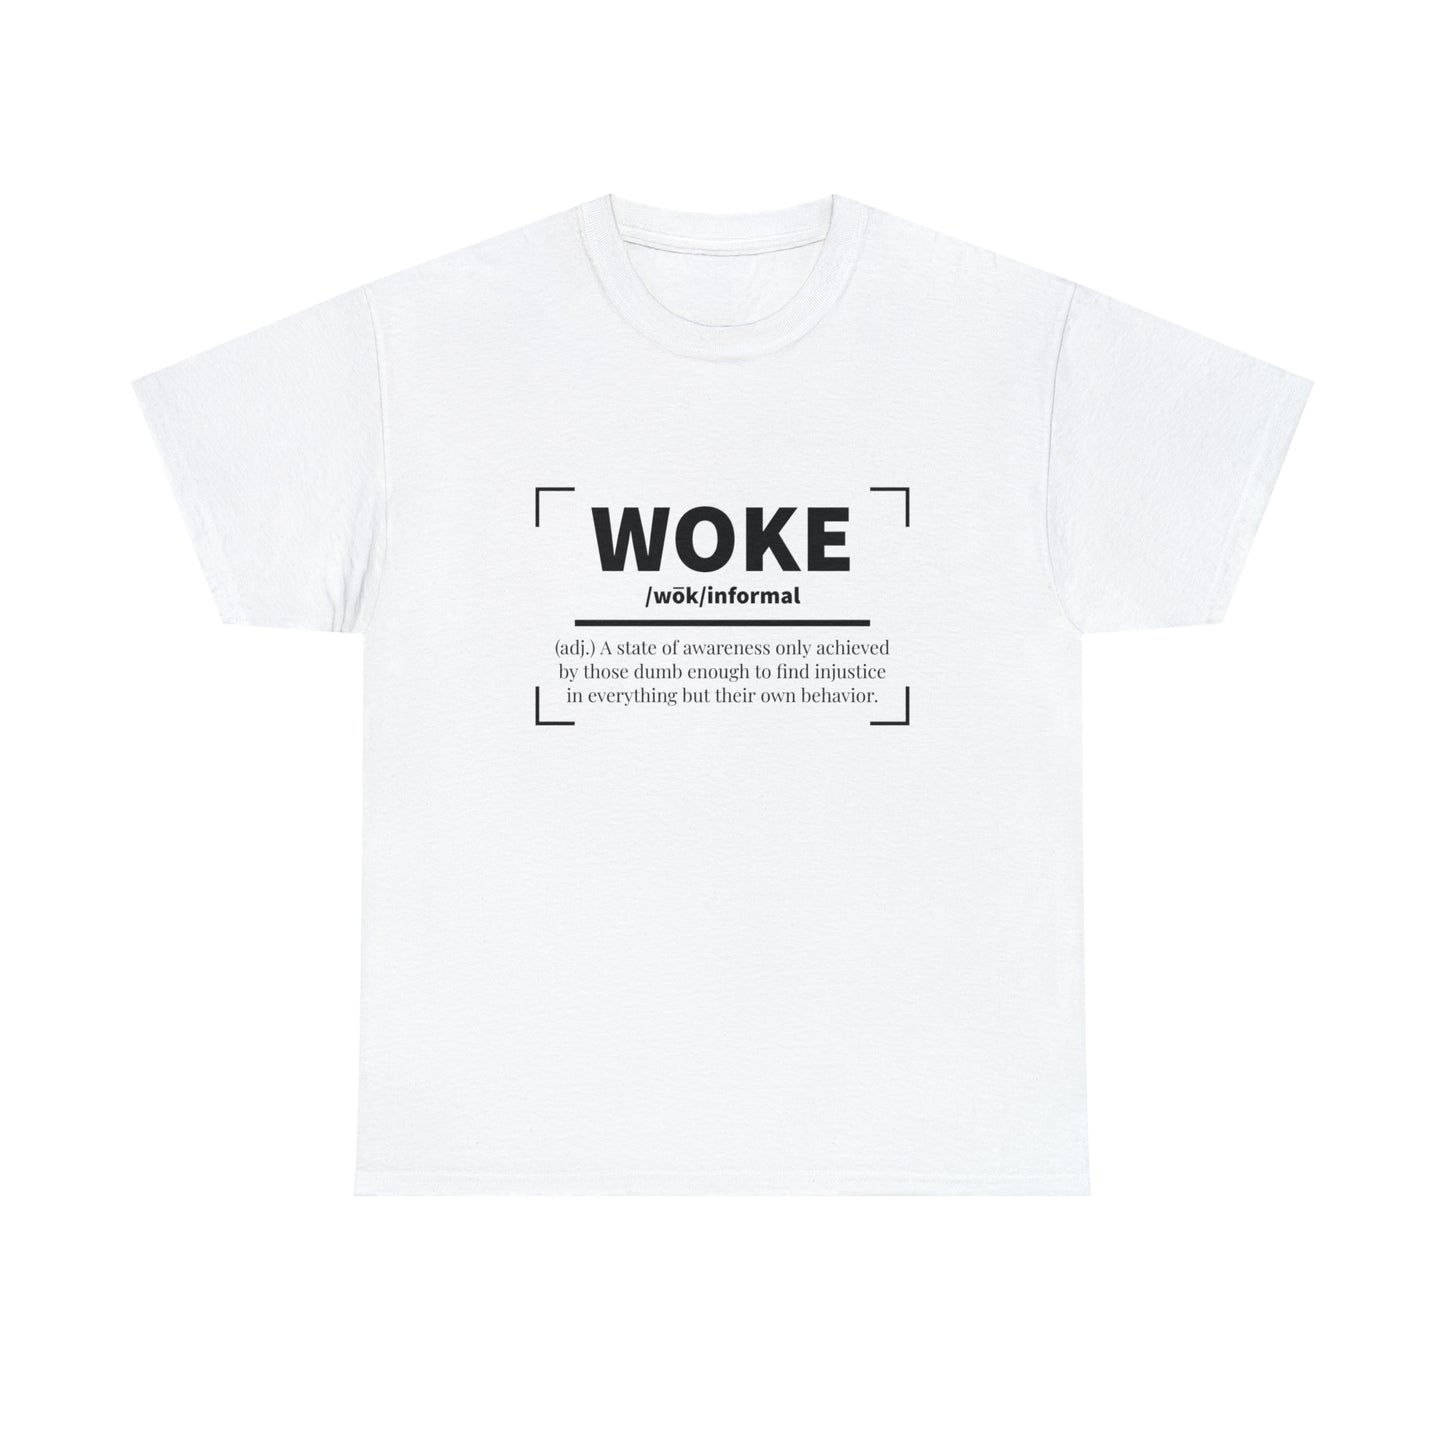 Woke Definition T-Shirt Anti Woke TShirt Conservative T Shirt Political Shirt Funny Political Shirt For Conservative Gift For Republican Tee